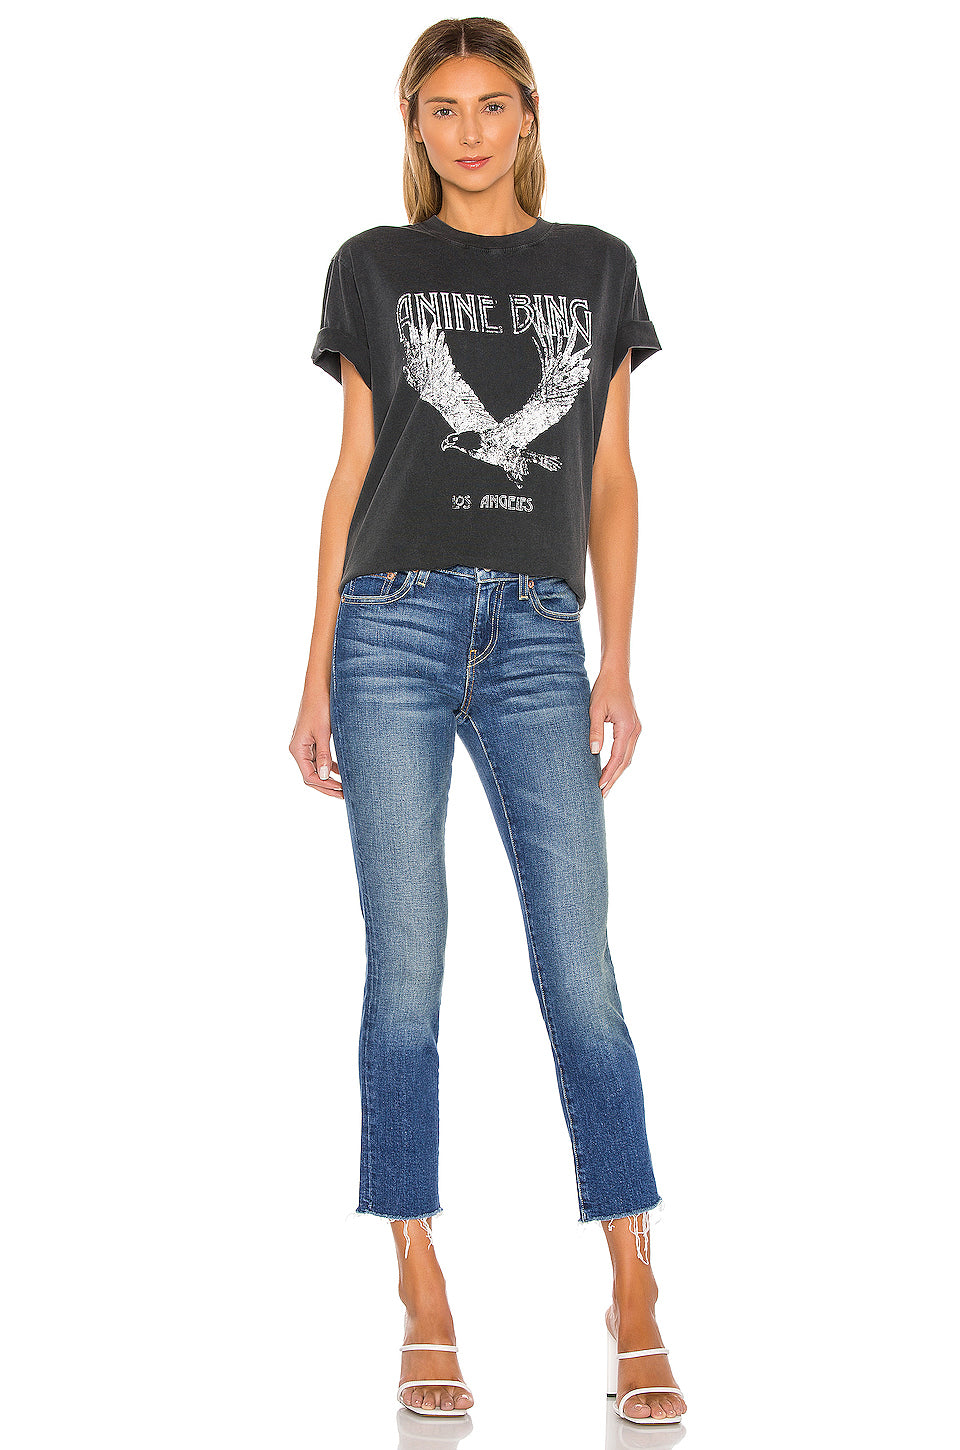 Début du printemps Nouveaux vêtements pour femmes Casual All-Match Bing Eagle T-shirt imprimé graphique